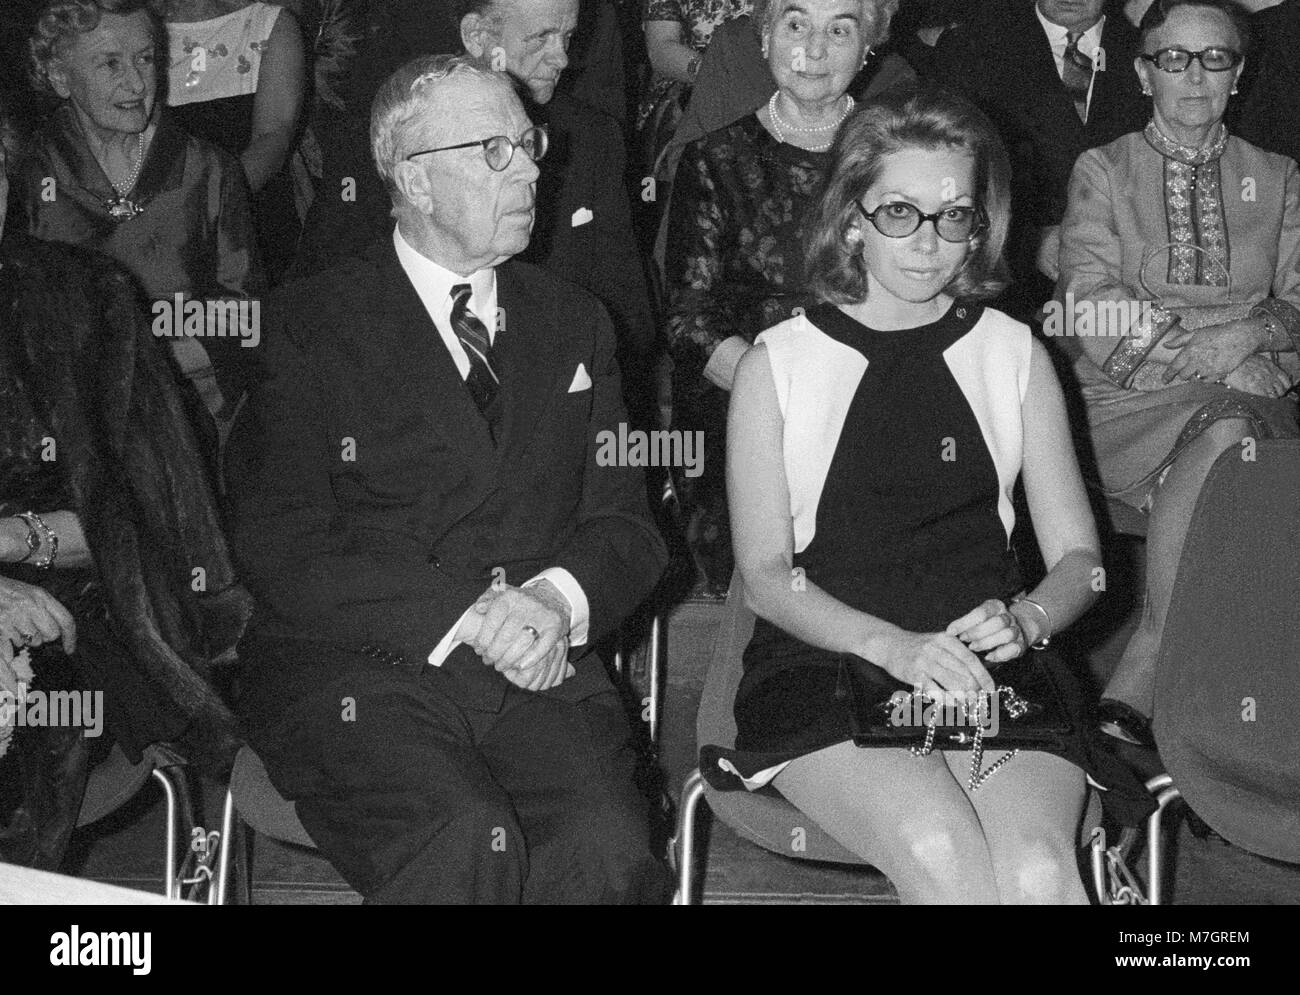 Le ROI GUSTAV VI ADOLF avec la princesse Christina à Rome 1969 Institutets vänner Banque D'Images